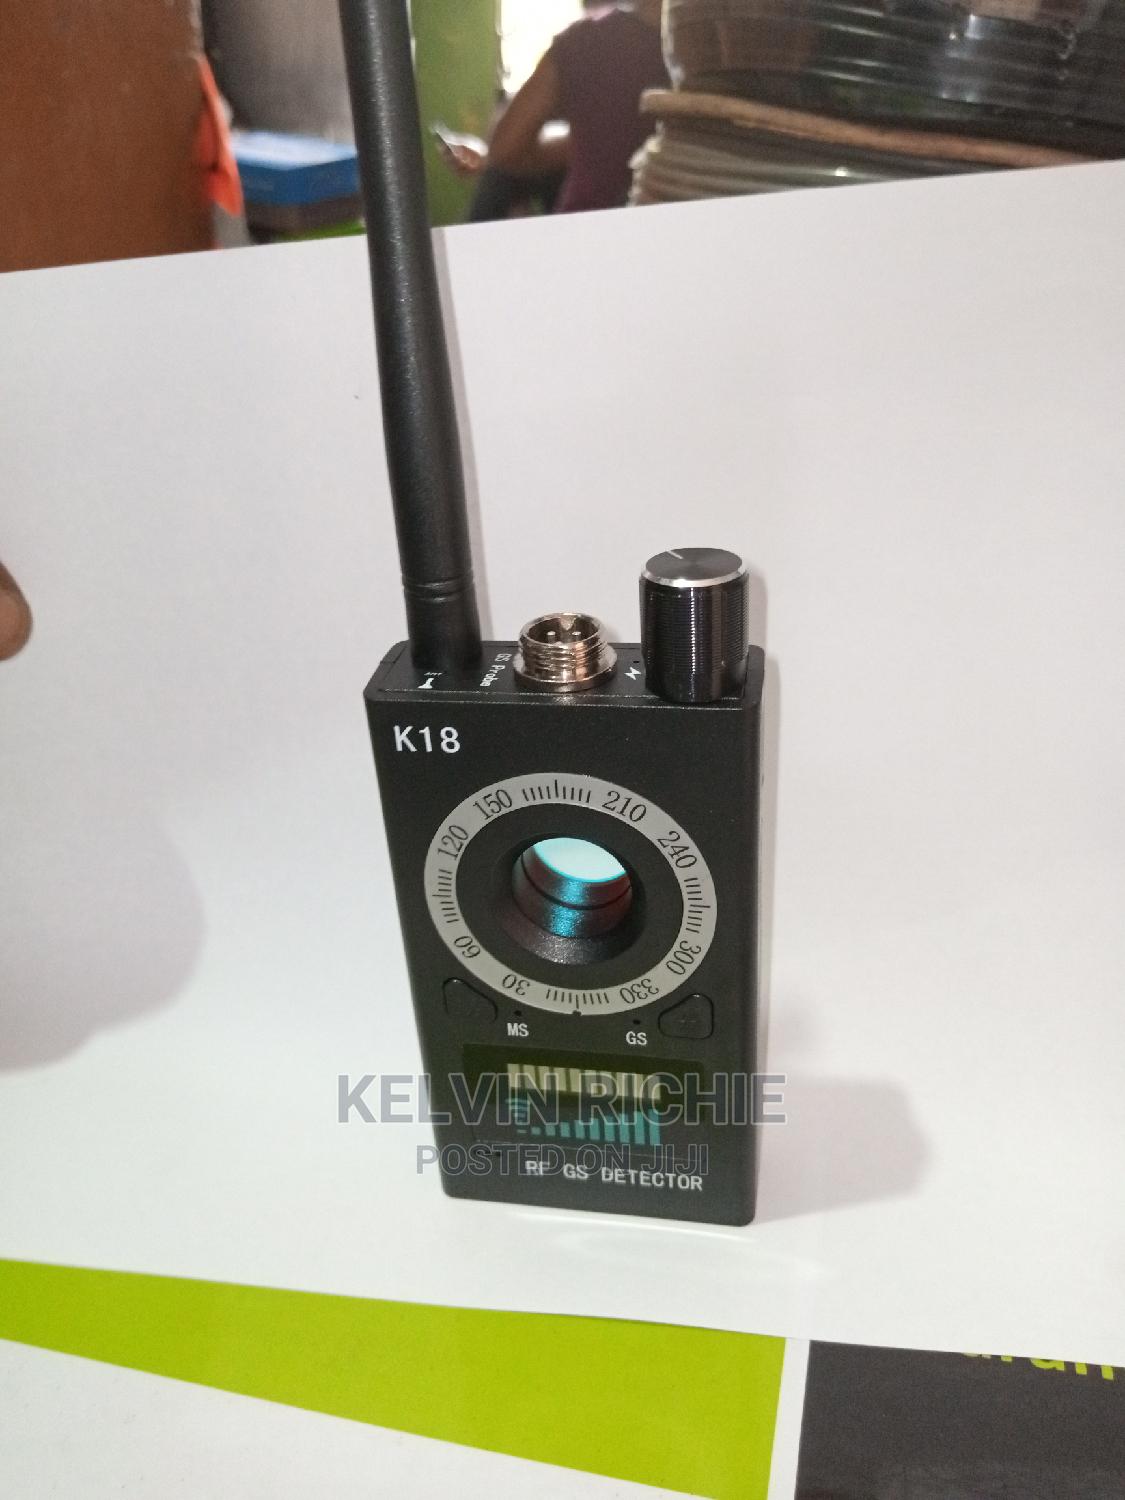 k18 rf gs detector user manual